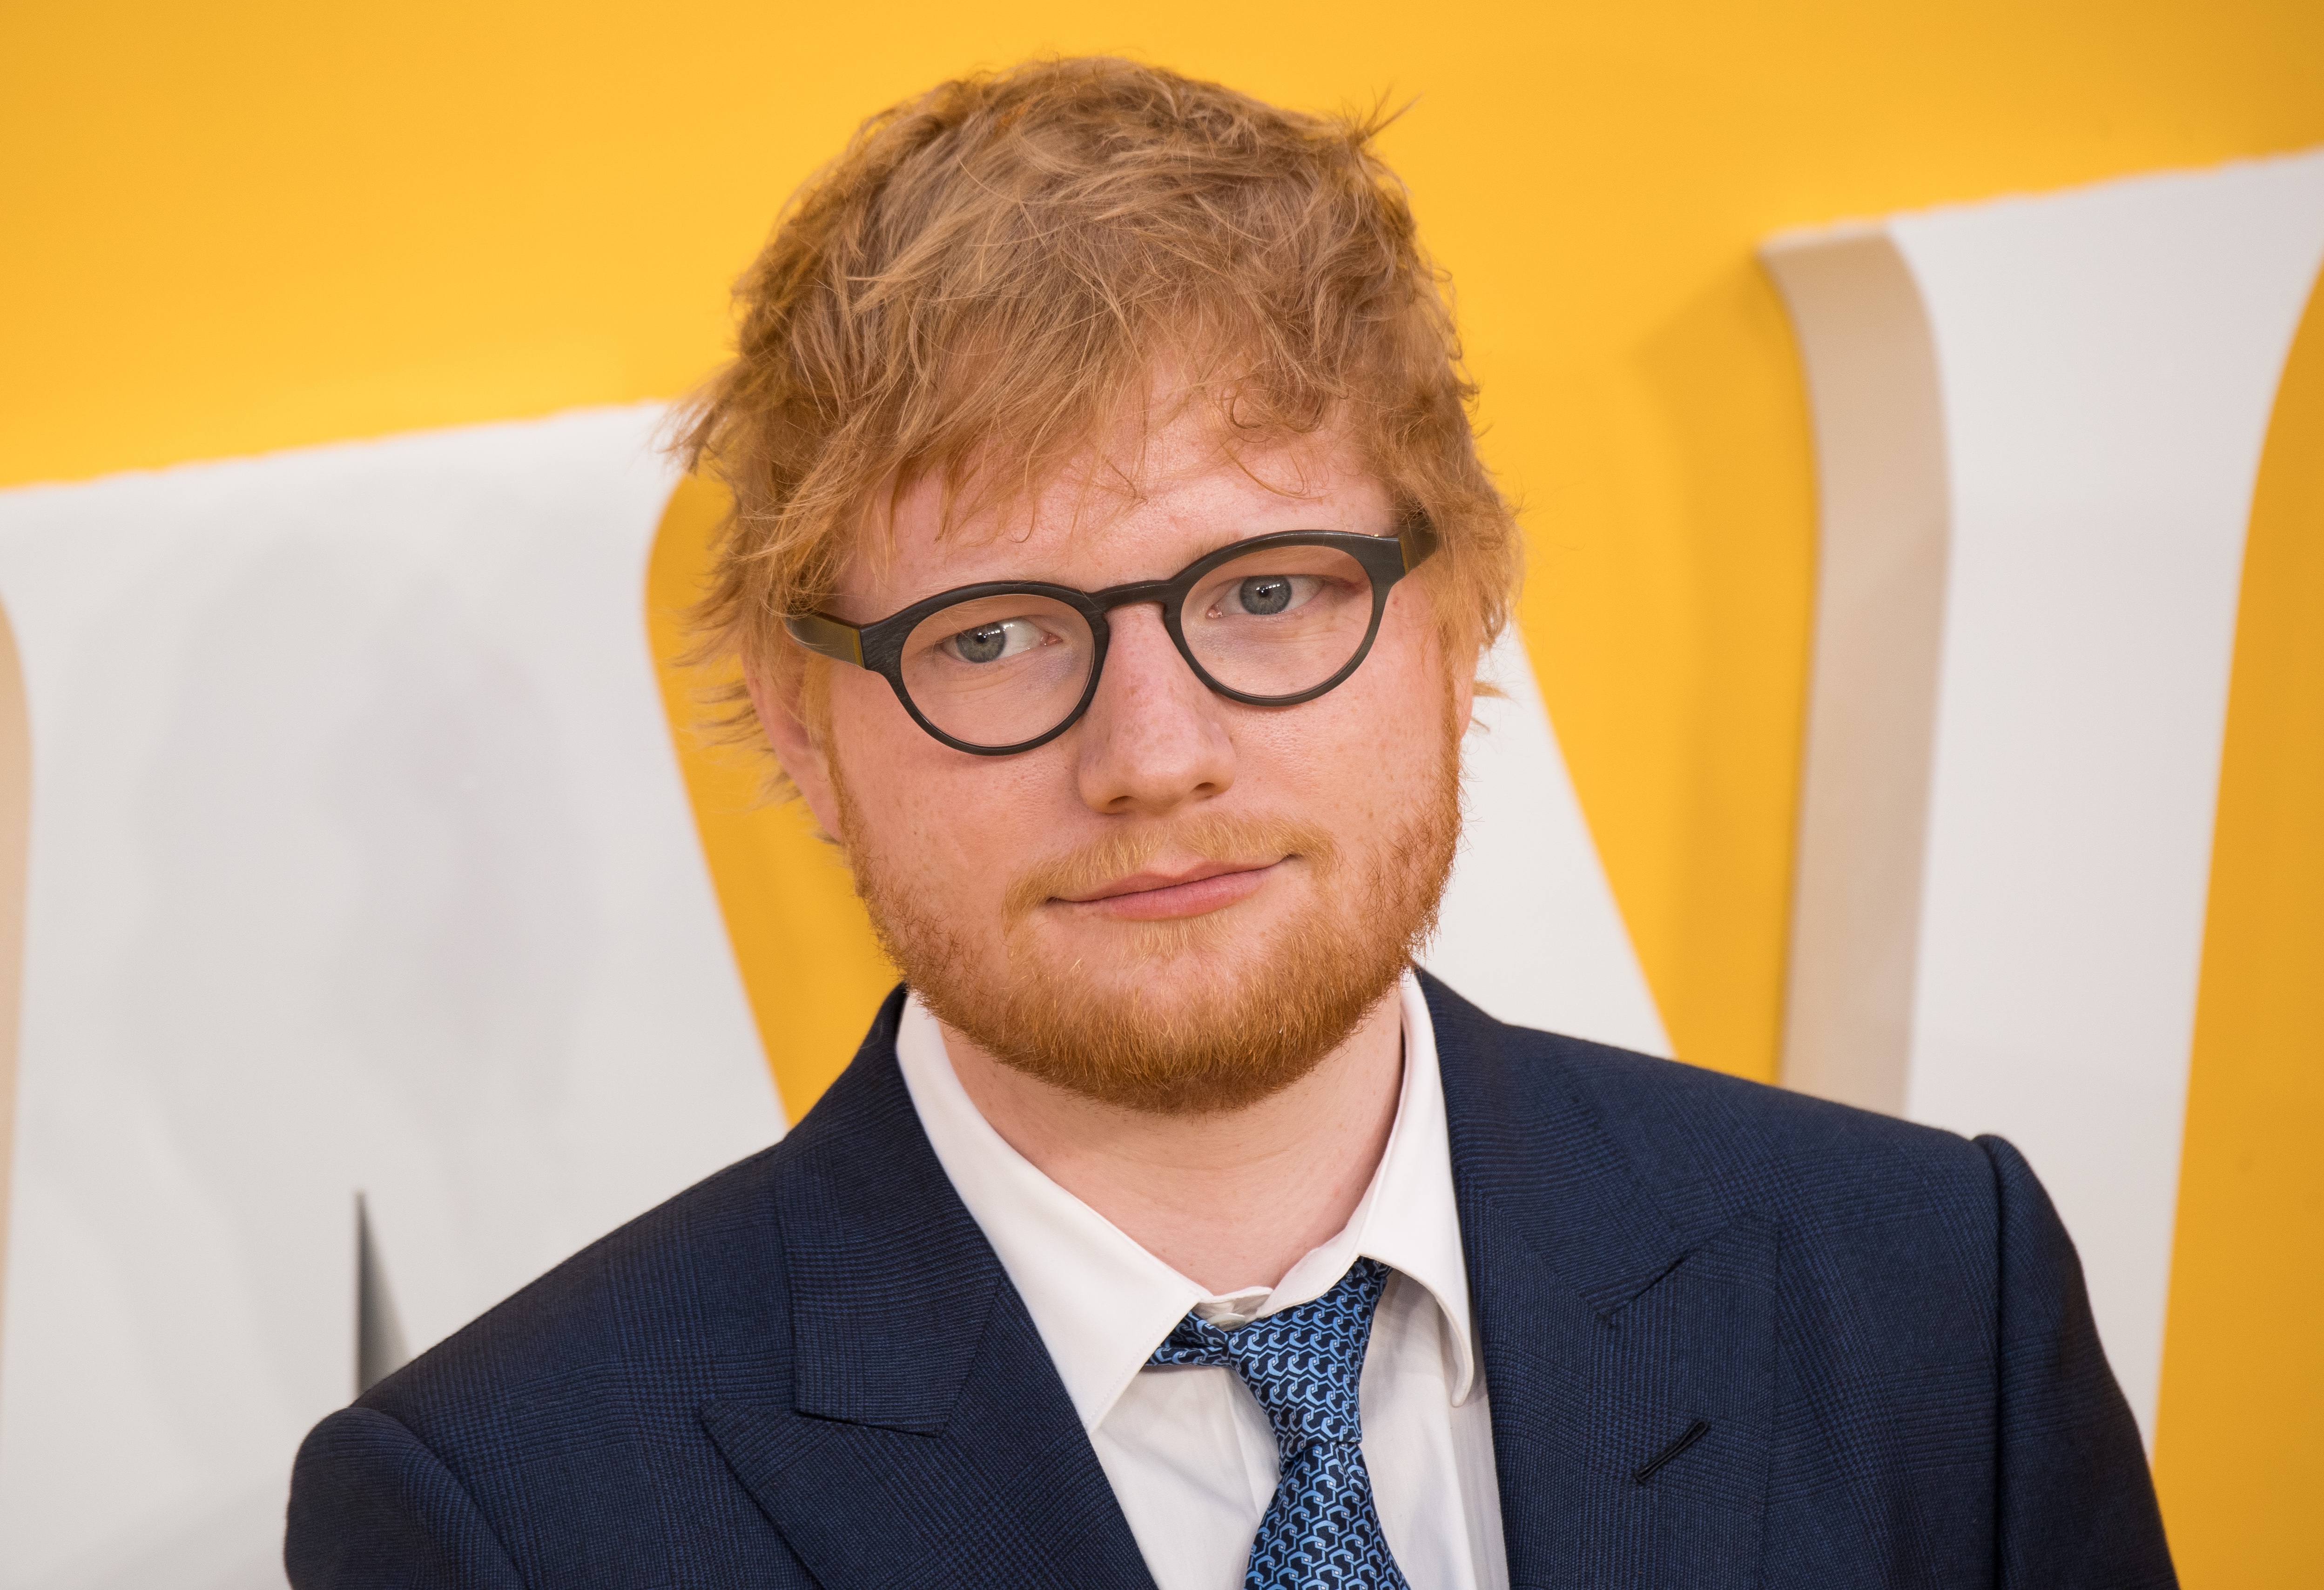 Nicht so traurig, wie er aussieht: Ed Sheeran kann auch über sich selbst lachen.